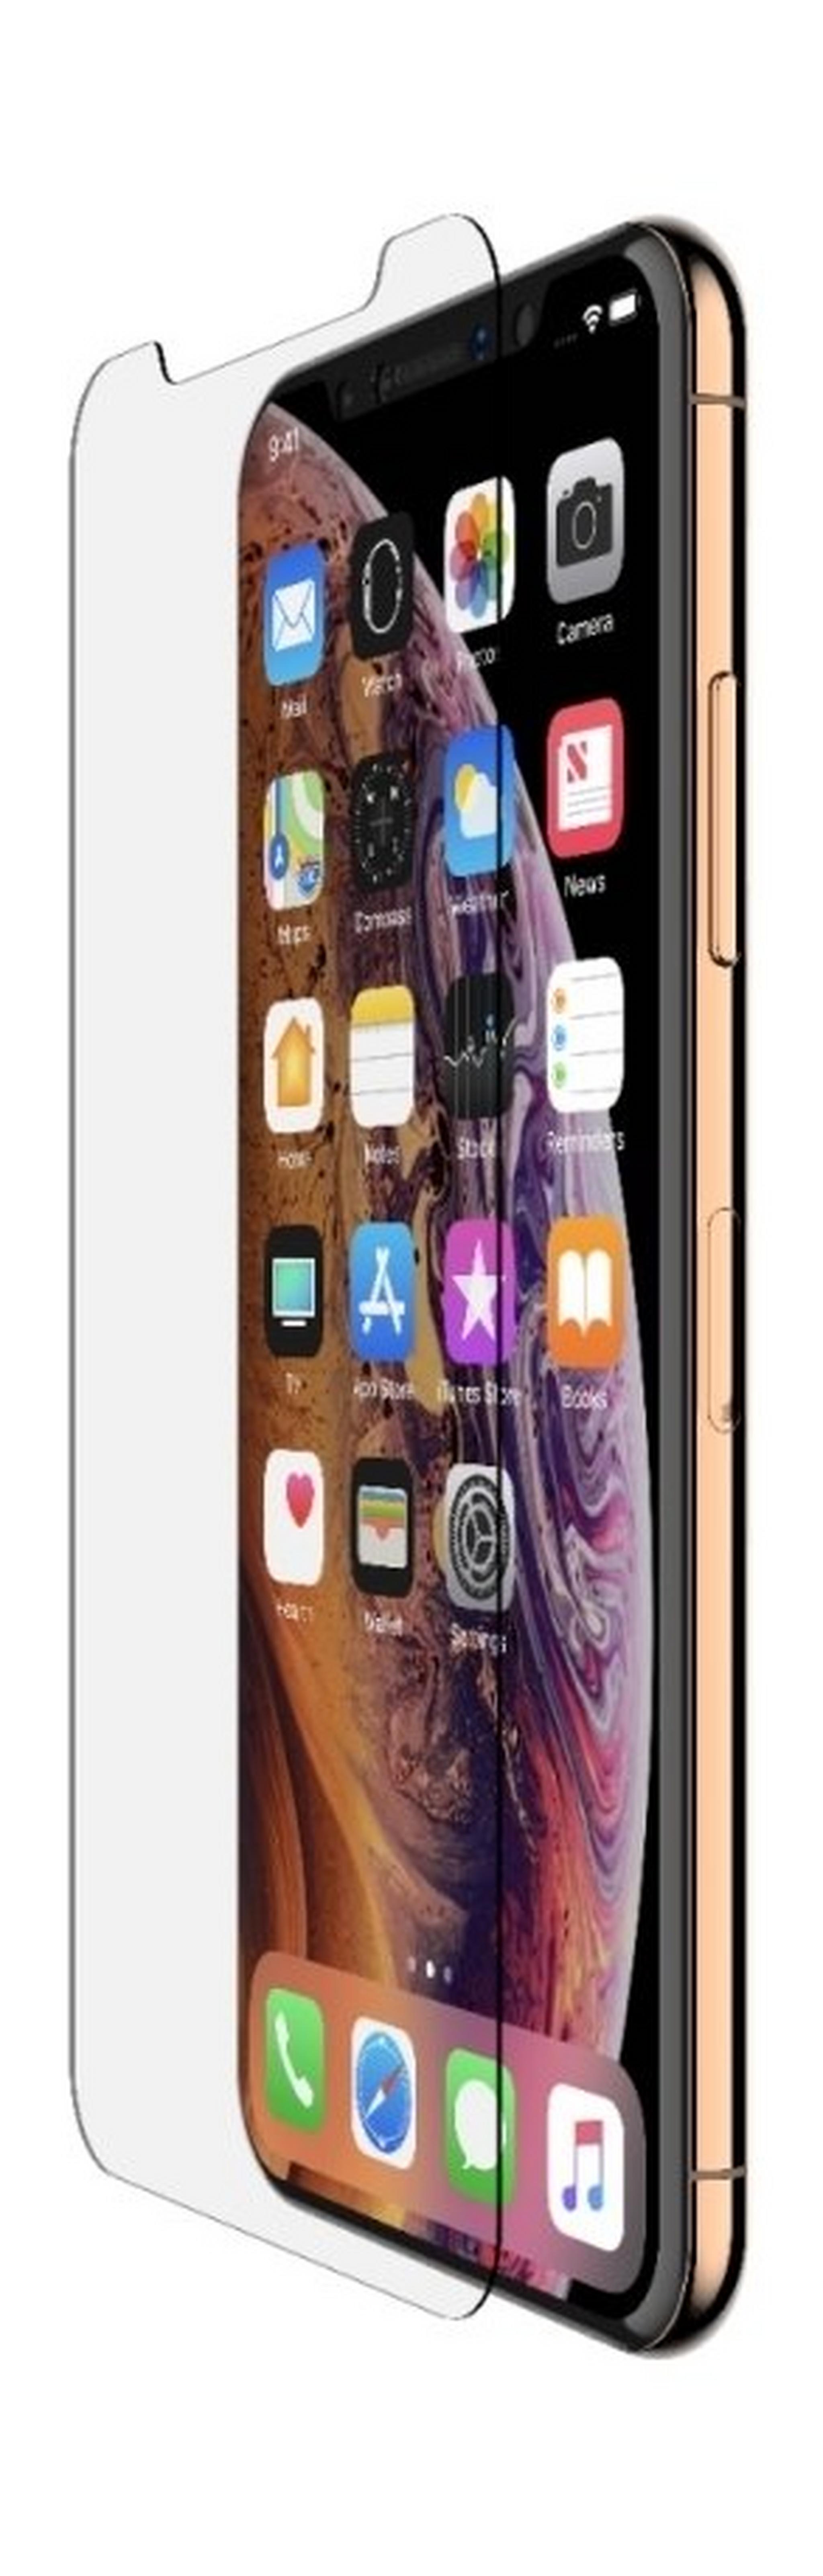 واقي الشاشة بيلكين إنفيزي جلاس لهاتف أيفون 11 - شفاف